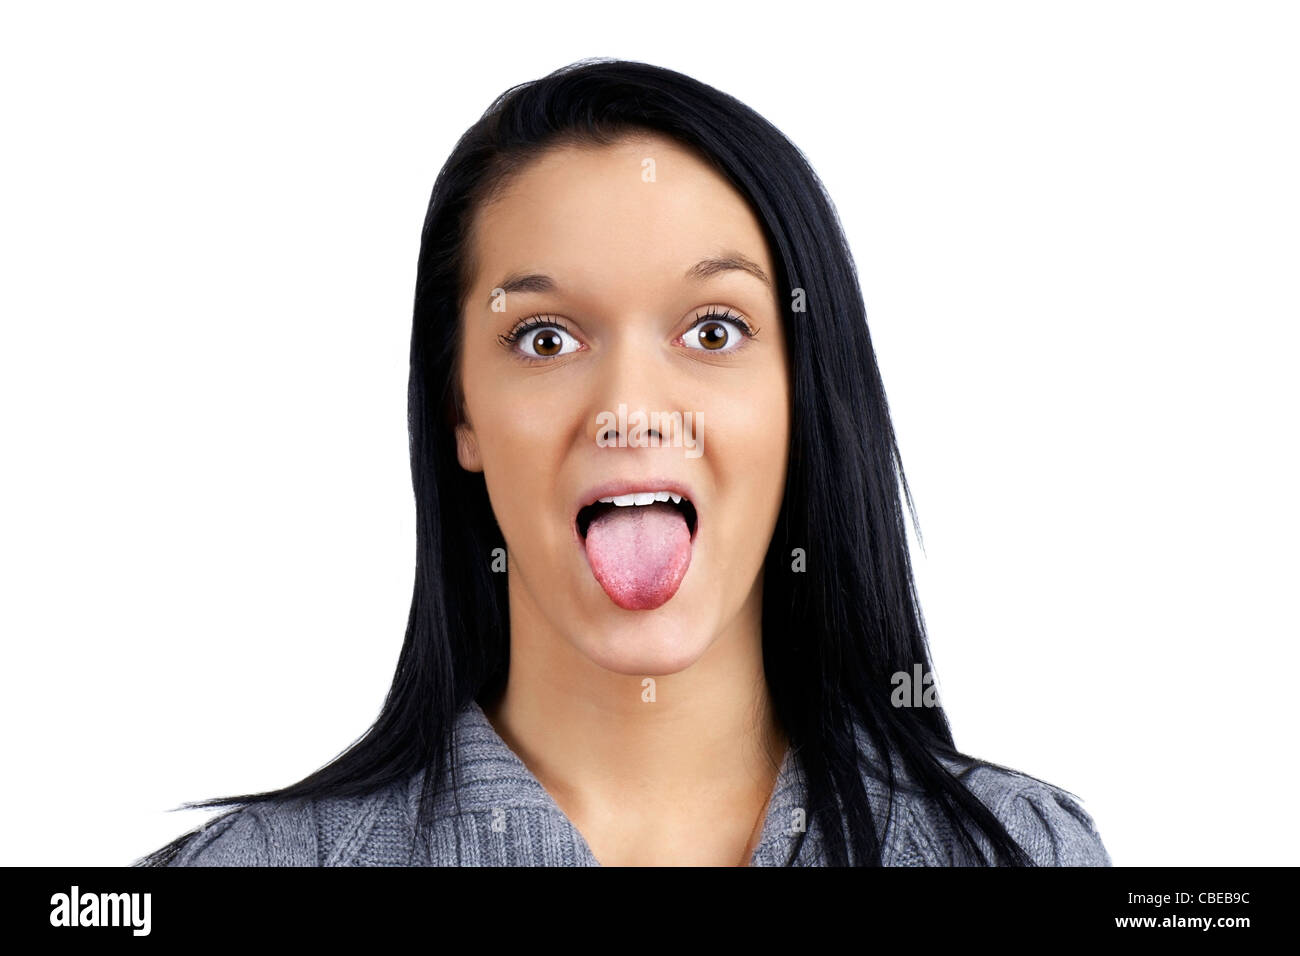 Drôle et humoristique portrait d'une belle jeune femme faisant face en collant sa langue out Banque D'Images